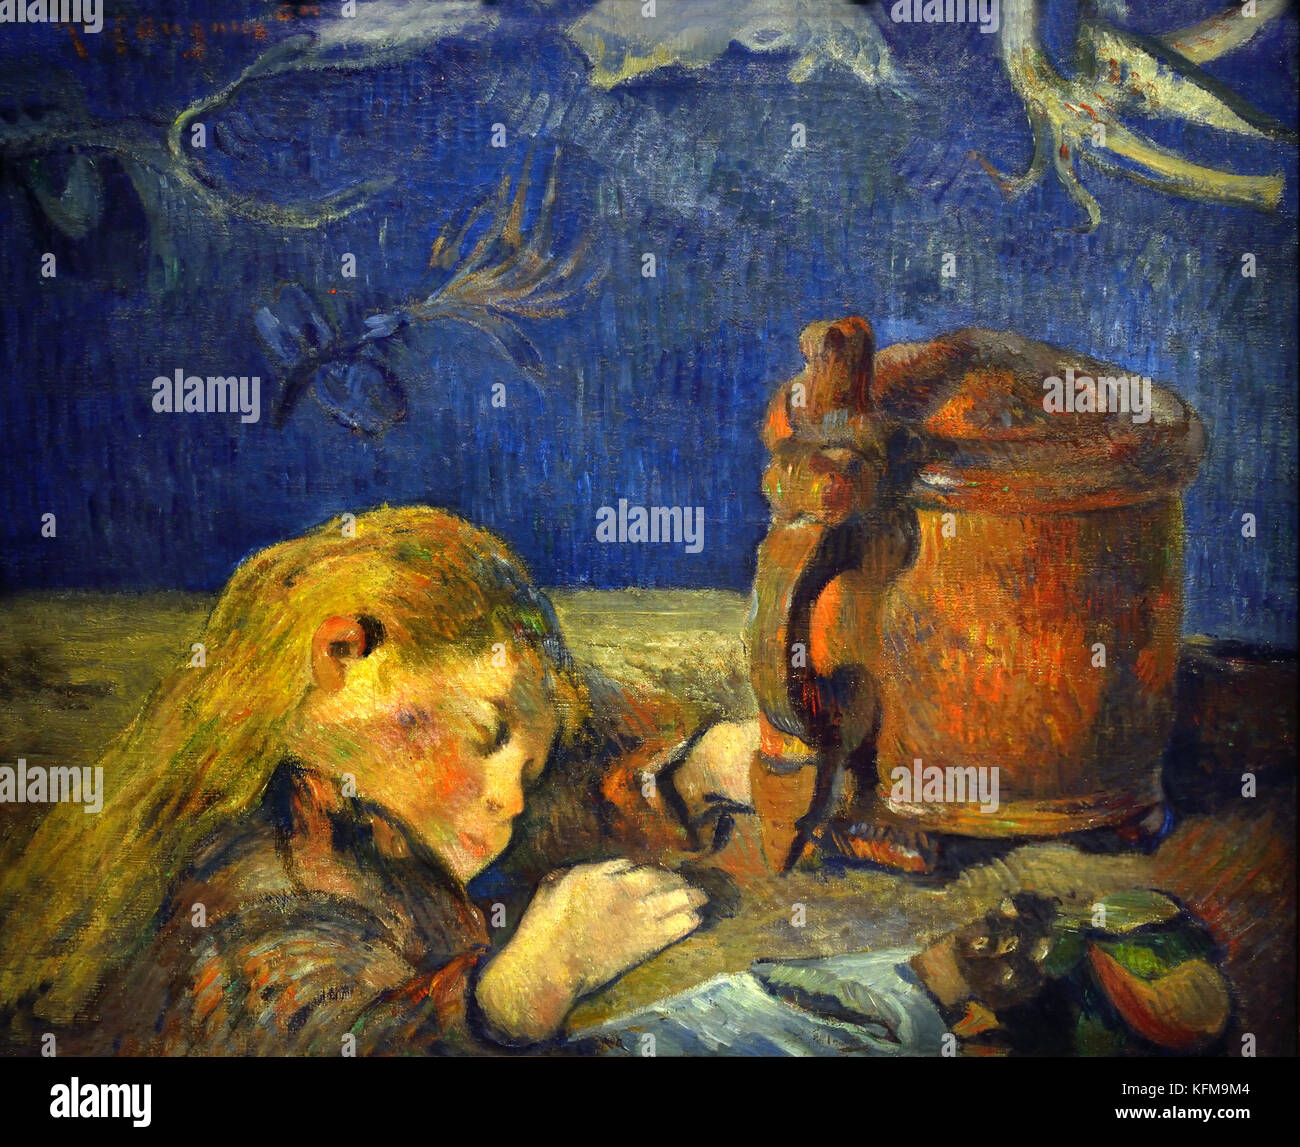 Schlafende Kind-Enfant Endormi 1884 Paul Gauguin - Eugène Henri Paul Gauguin 1848 - 1903 eine französische wurde post-impressionistischen Künstler, Frankreich. (Gestorben ,8 Mai 1903, Atuona, Marquesas Islands, Französisch-Polynesien) Maler, Bildhauer. Stockfoto